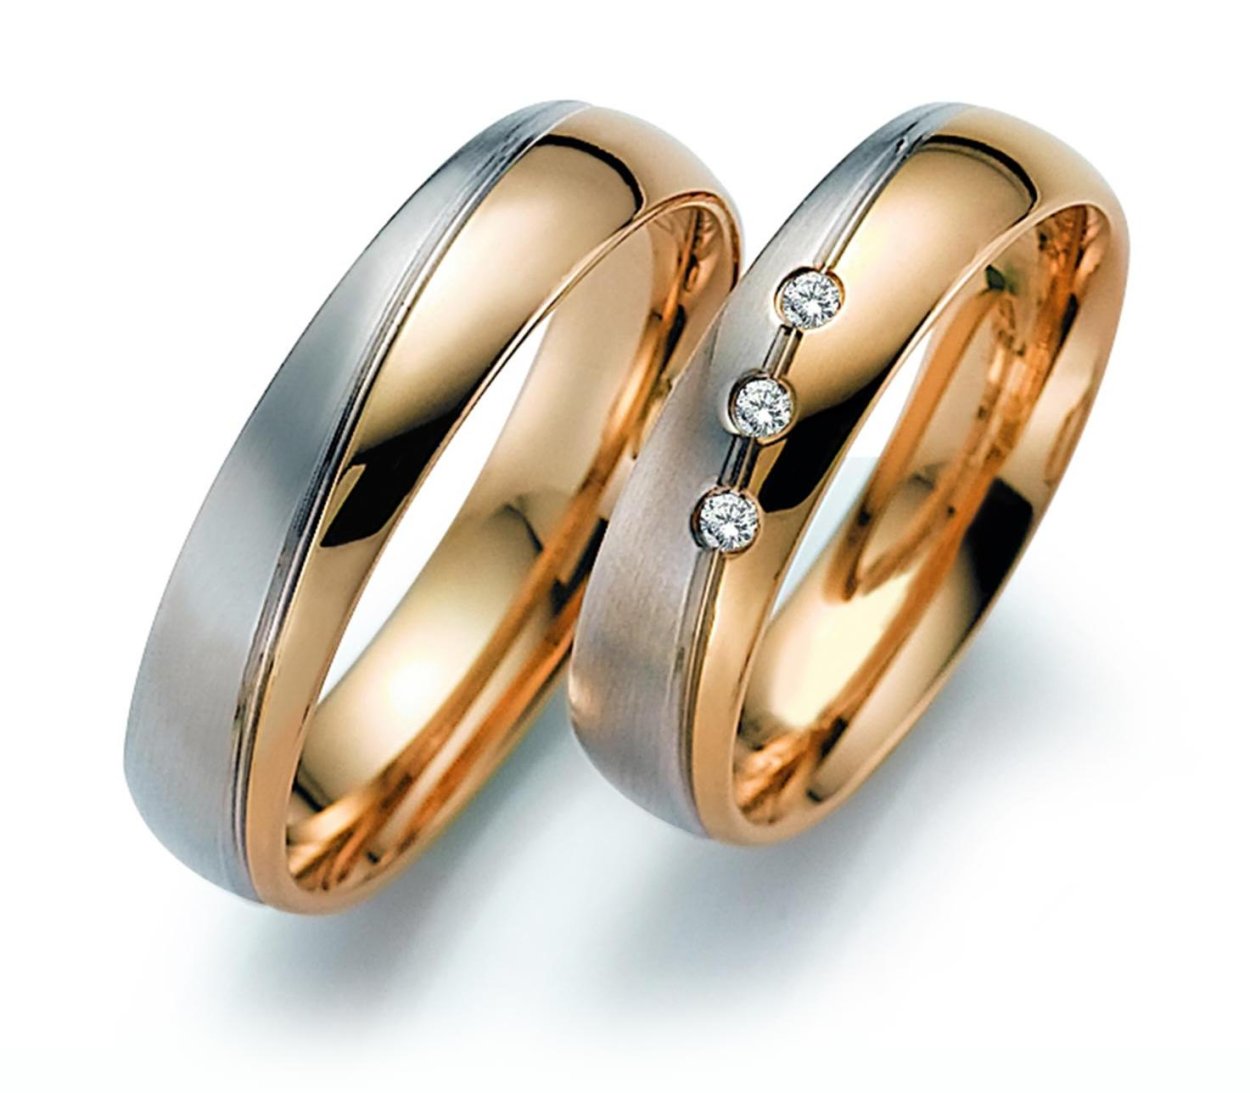 Обручальные кольца золотые на свадьбу. Парные обручальные кольца из золота 585. Обручальные кольца August Gerstner. Обручальные кольца парные 585. Обручальное кольцо из комбинированного золота r01-Wed-00108.